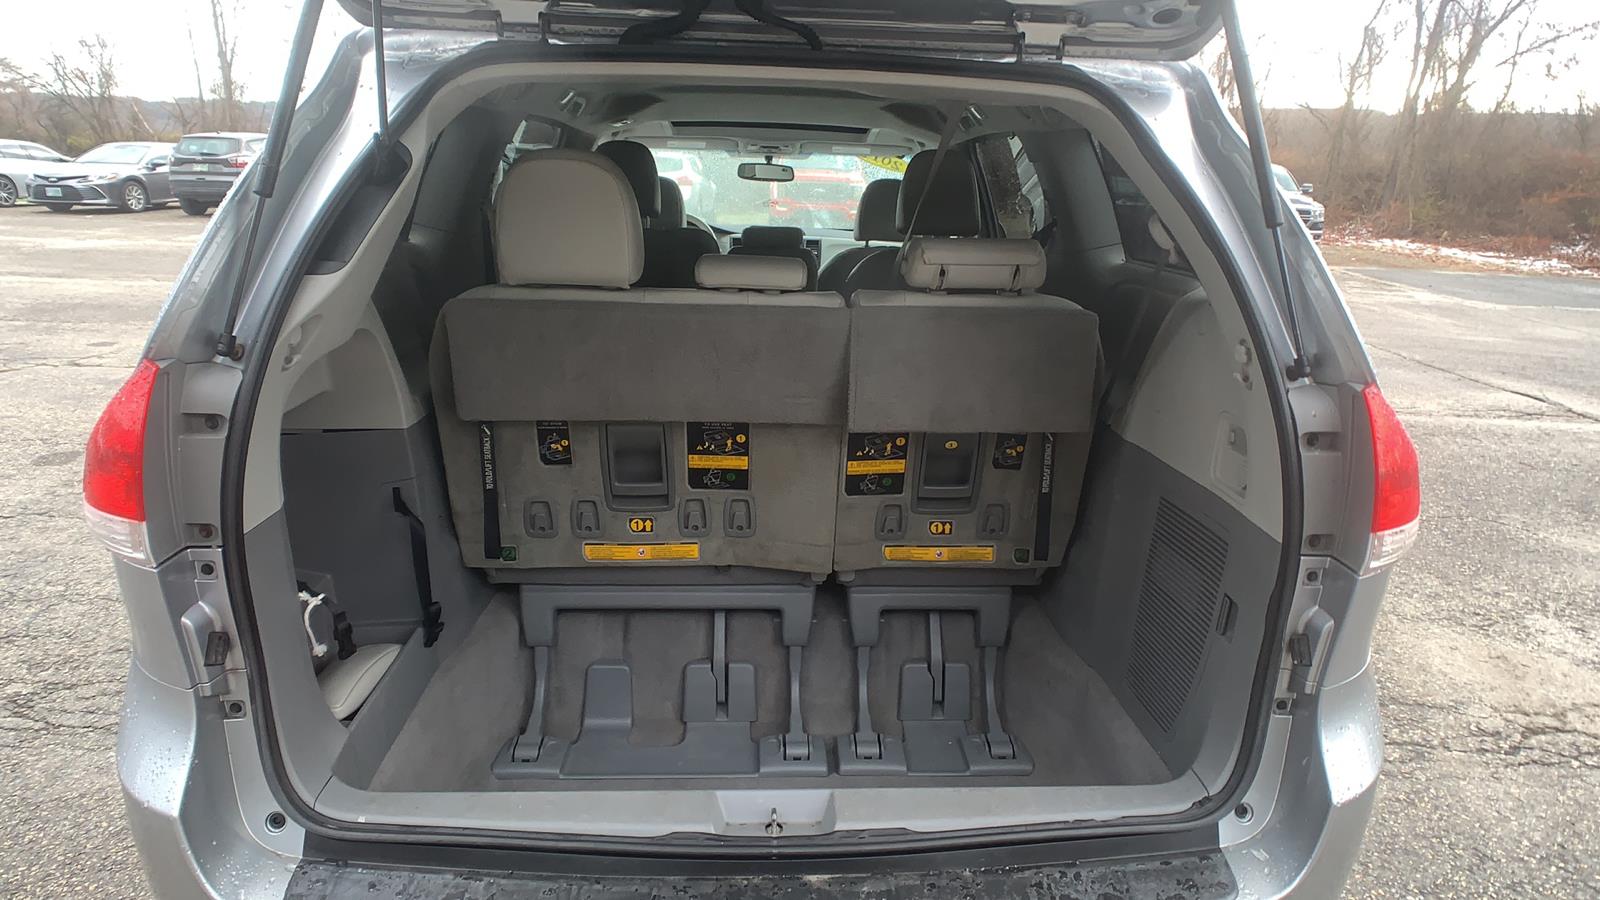 2011 Toyota Sienna Mini-van, Passenger